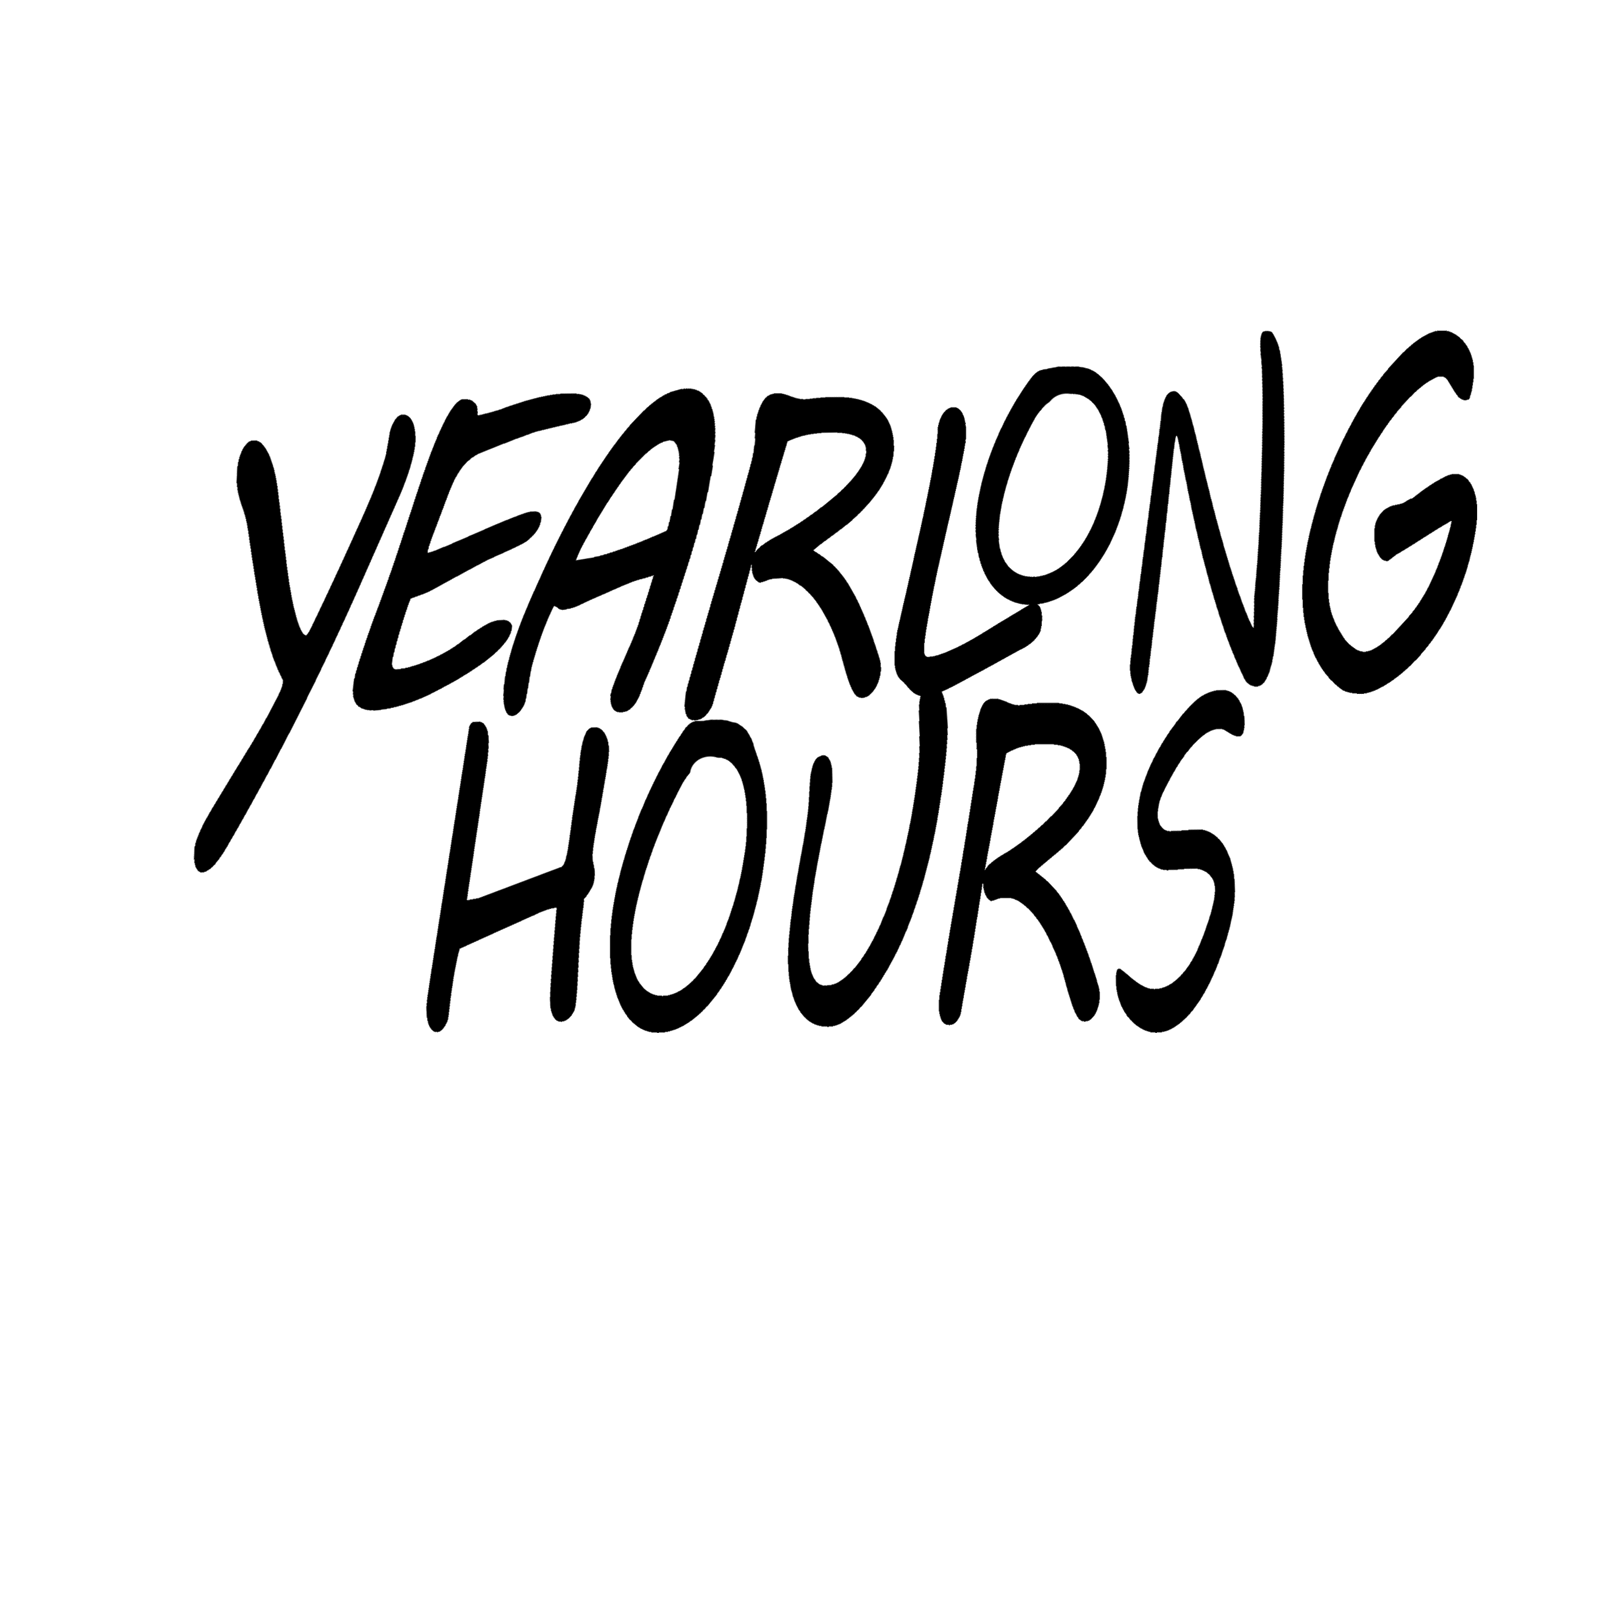 Yearlong Hours